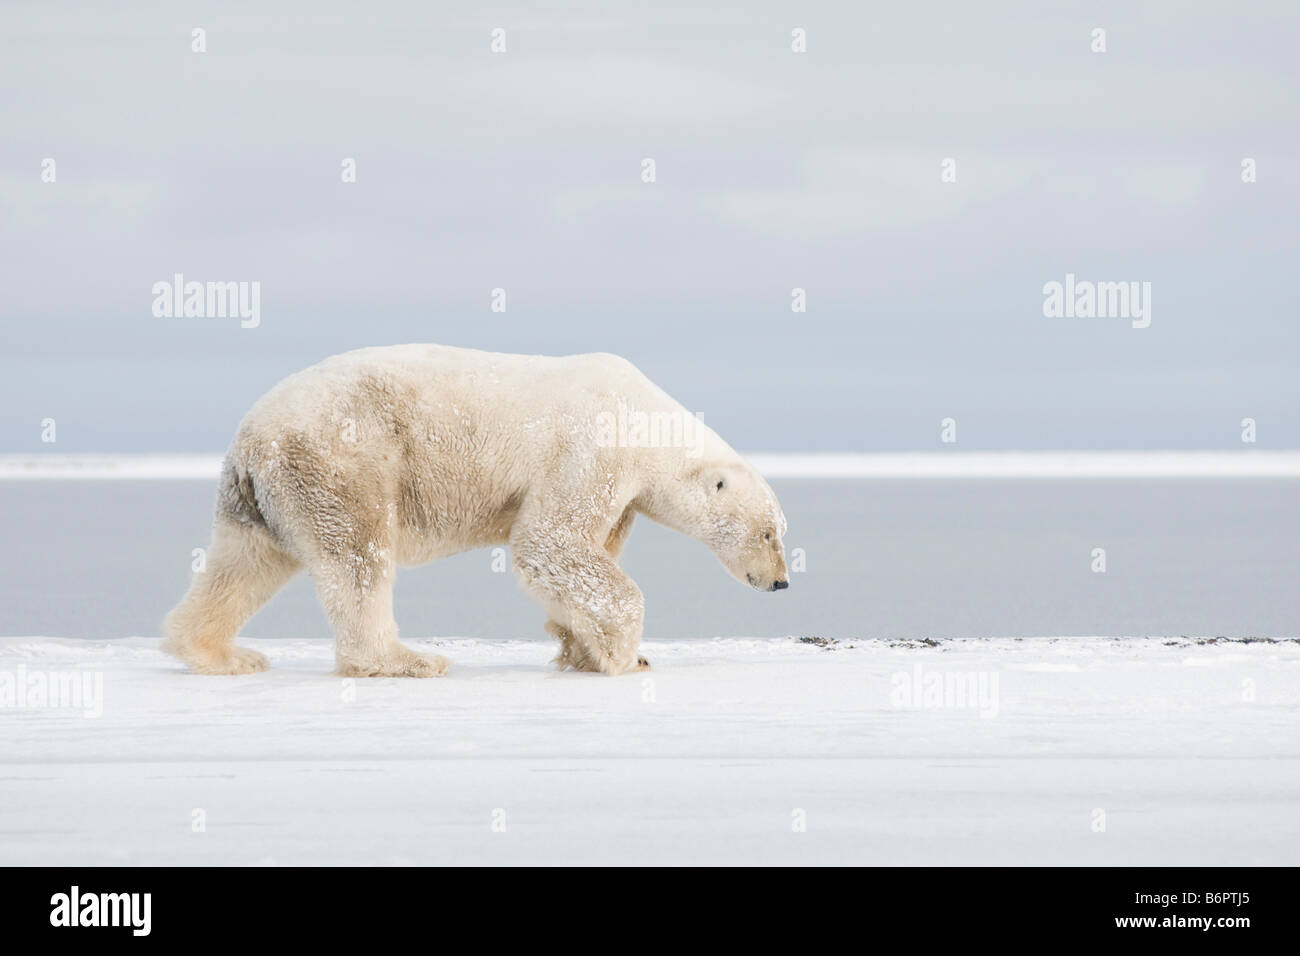 Orso polare Ursus maritimus, vecchio cinghiale adulto, passeggiate lungo l'Arctic National Wildlife Refuge, area 1002, North Slope of Alaska Foto Stock